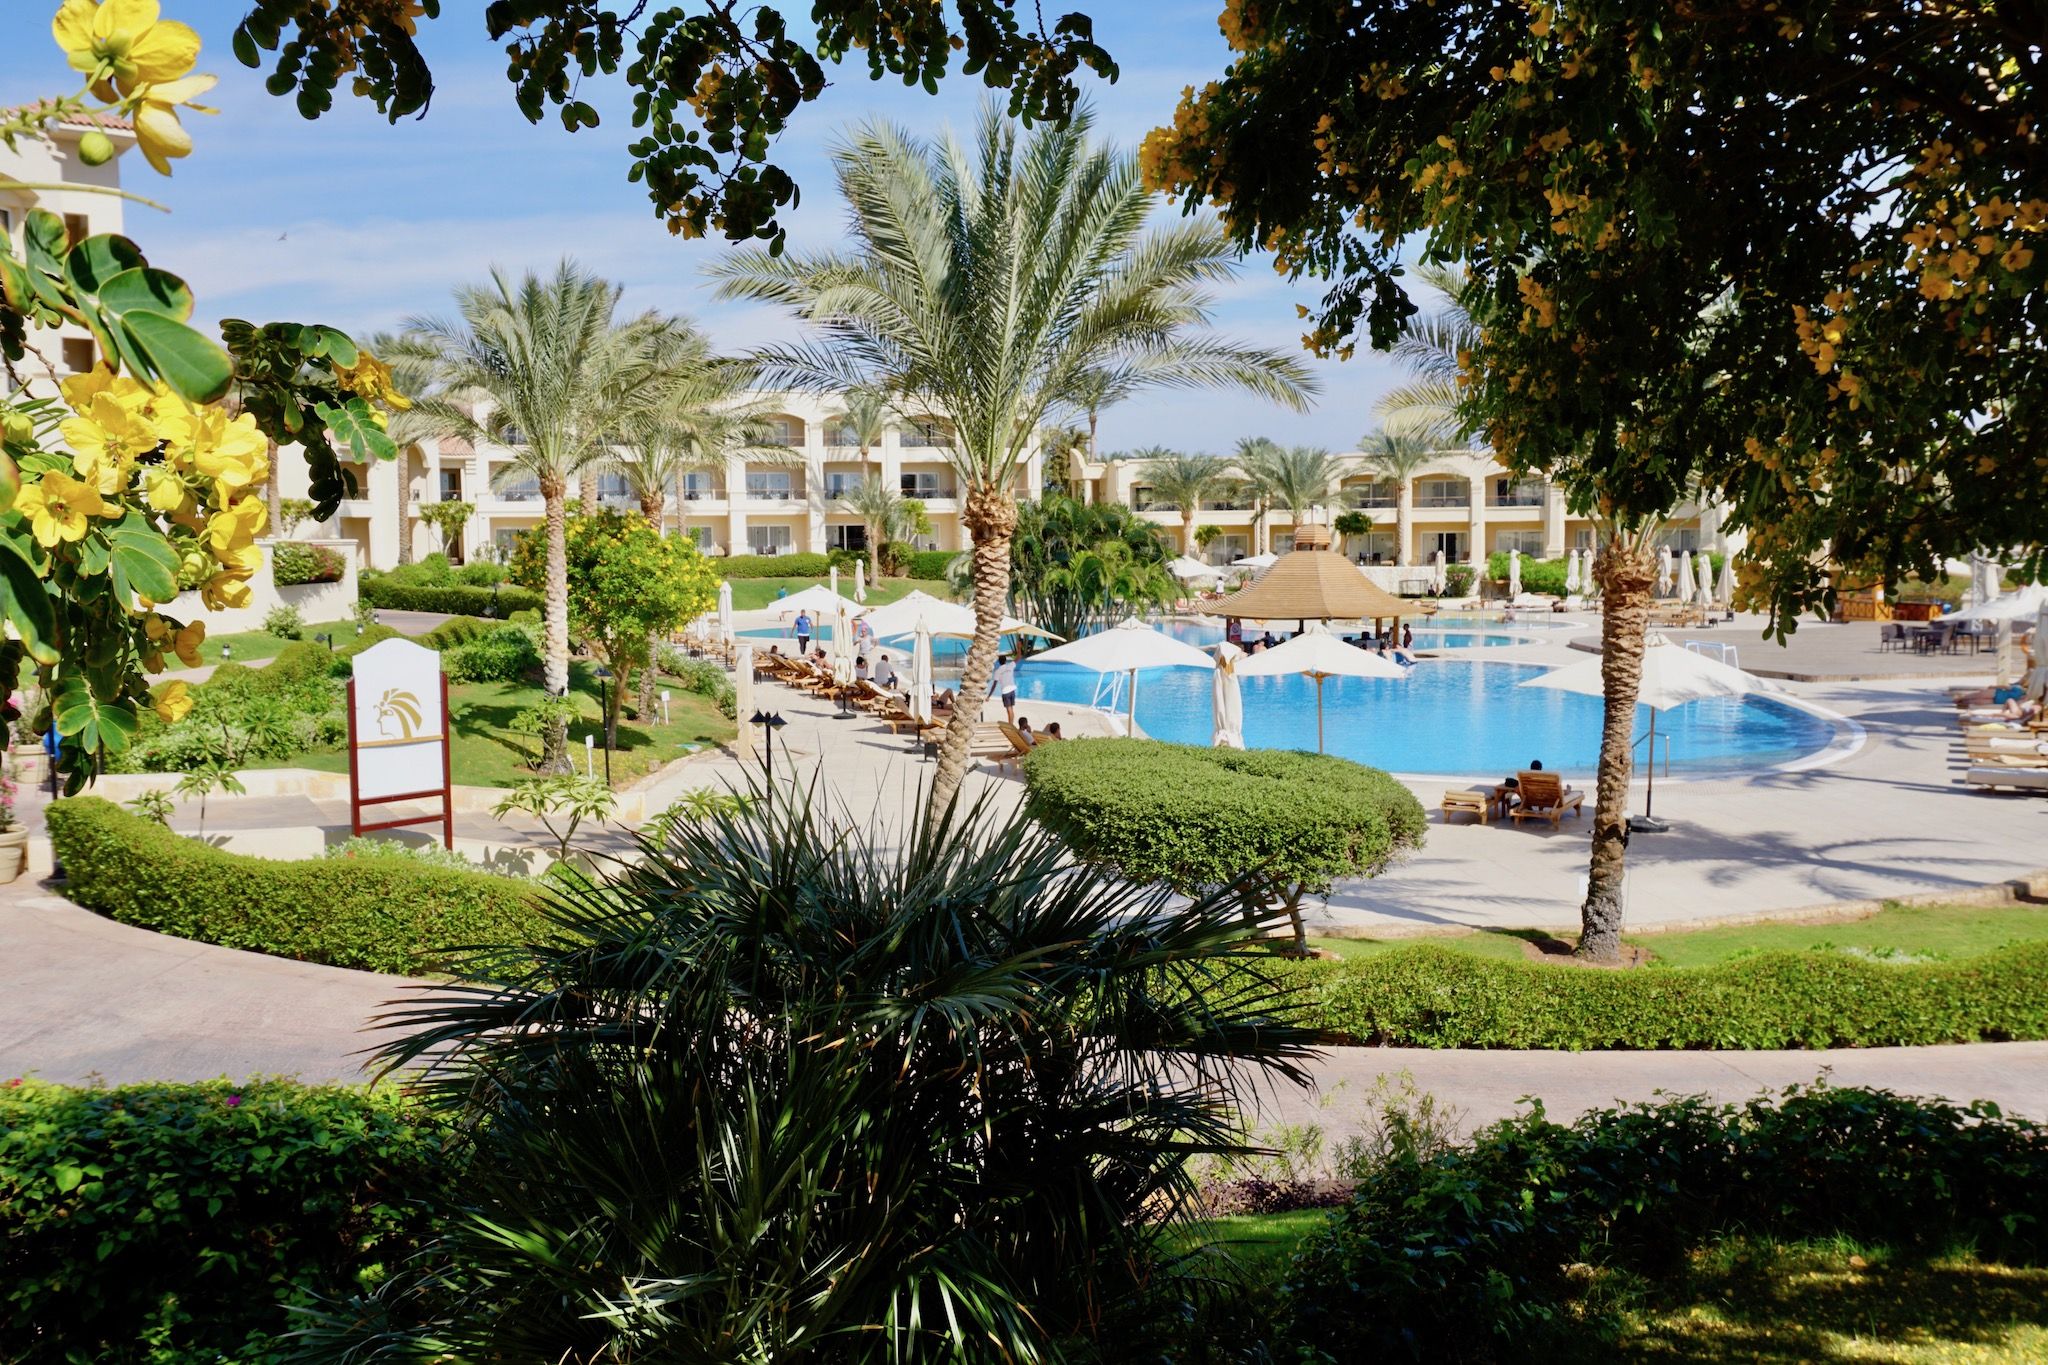 Reisebericht Sharm El Sheikh – Tipps & Erfahrungen für den Luxusort